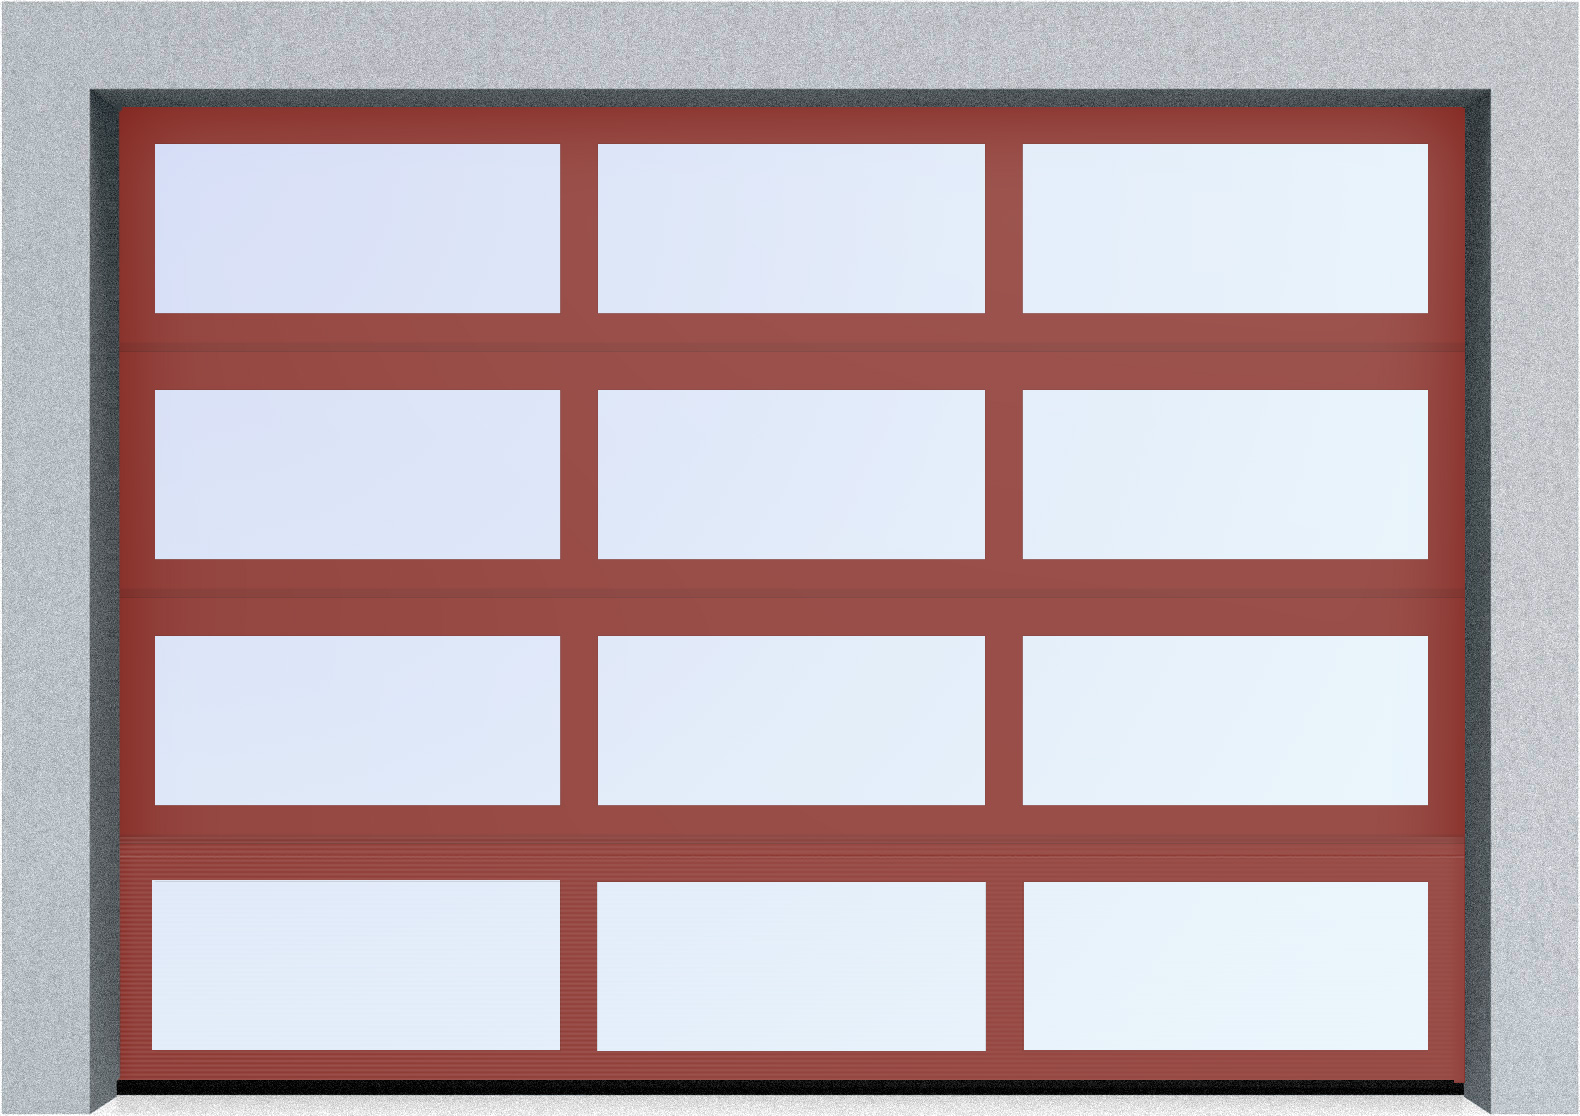  Секционные панорамные ворота серии AluTrend (АЛП) 6375х4500 нижняя панель стандартные цвета, фото 2 